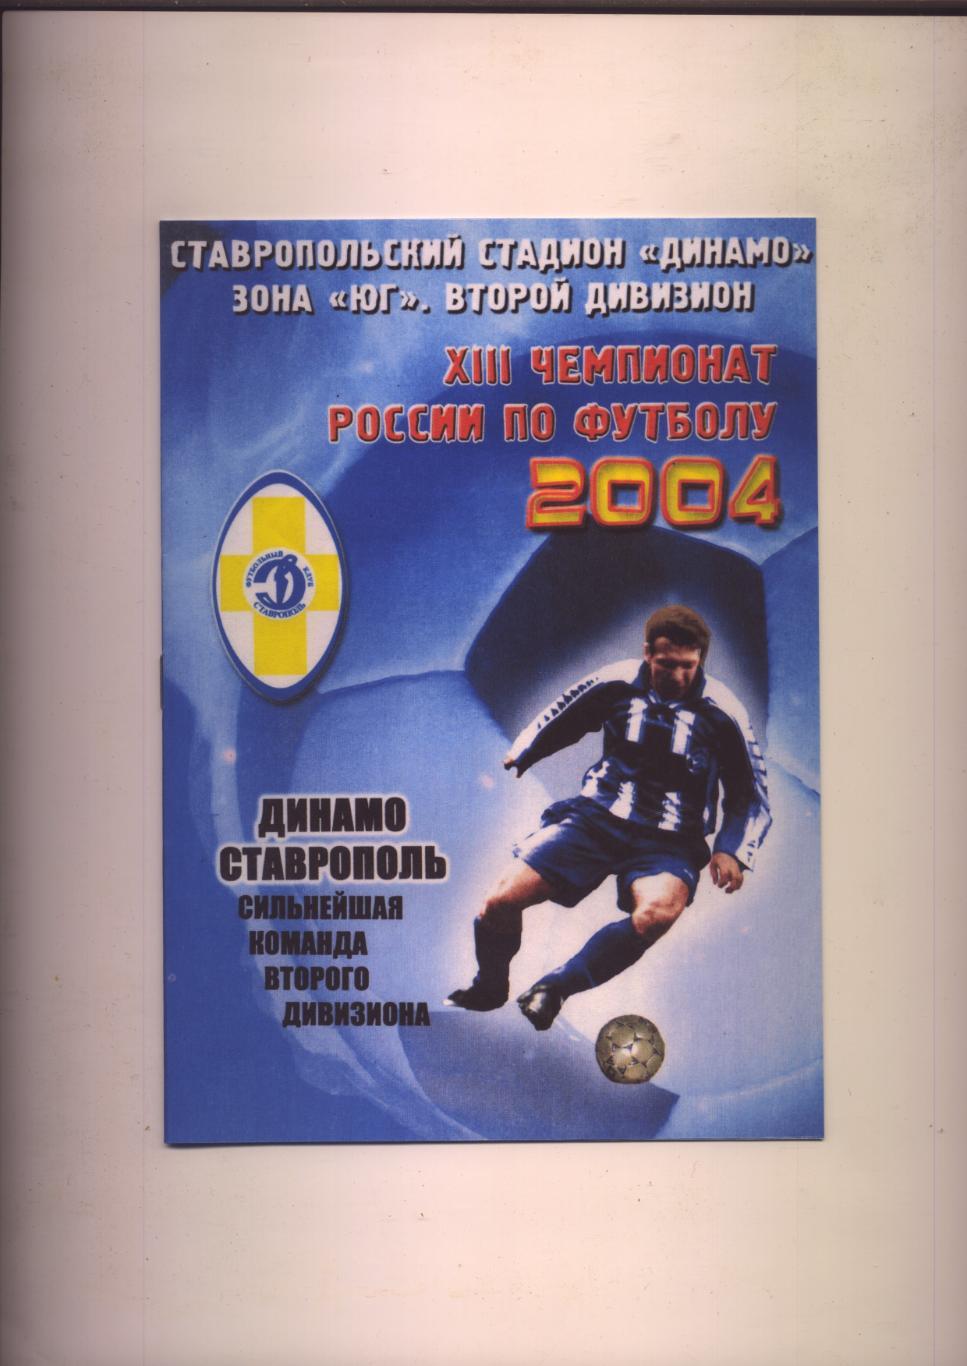 Футбол Фото Буклет Динамо Ставрополь сильнейшая команда второго дивизиона 2004